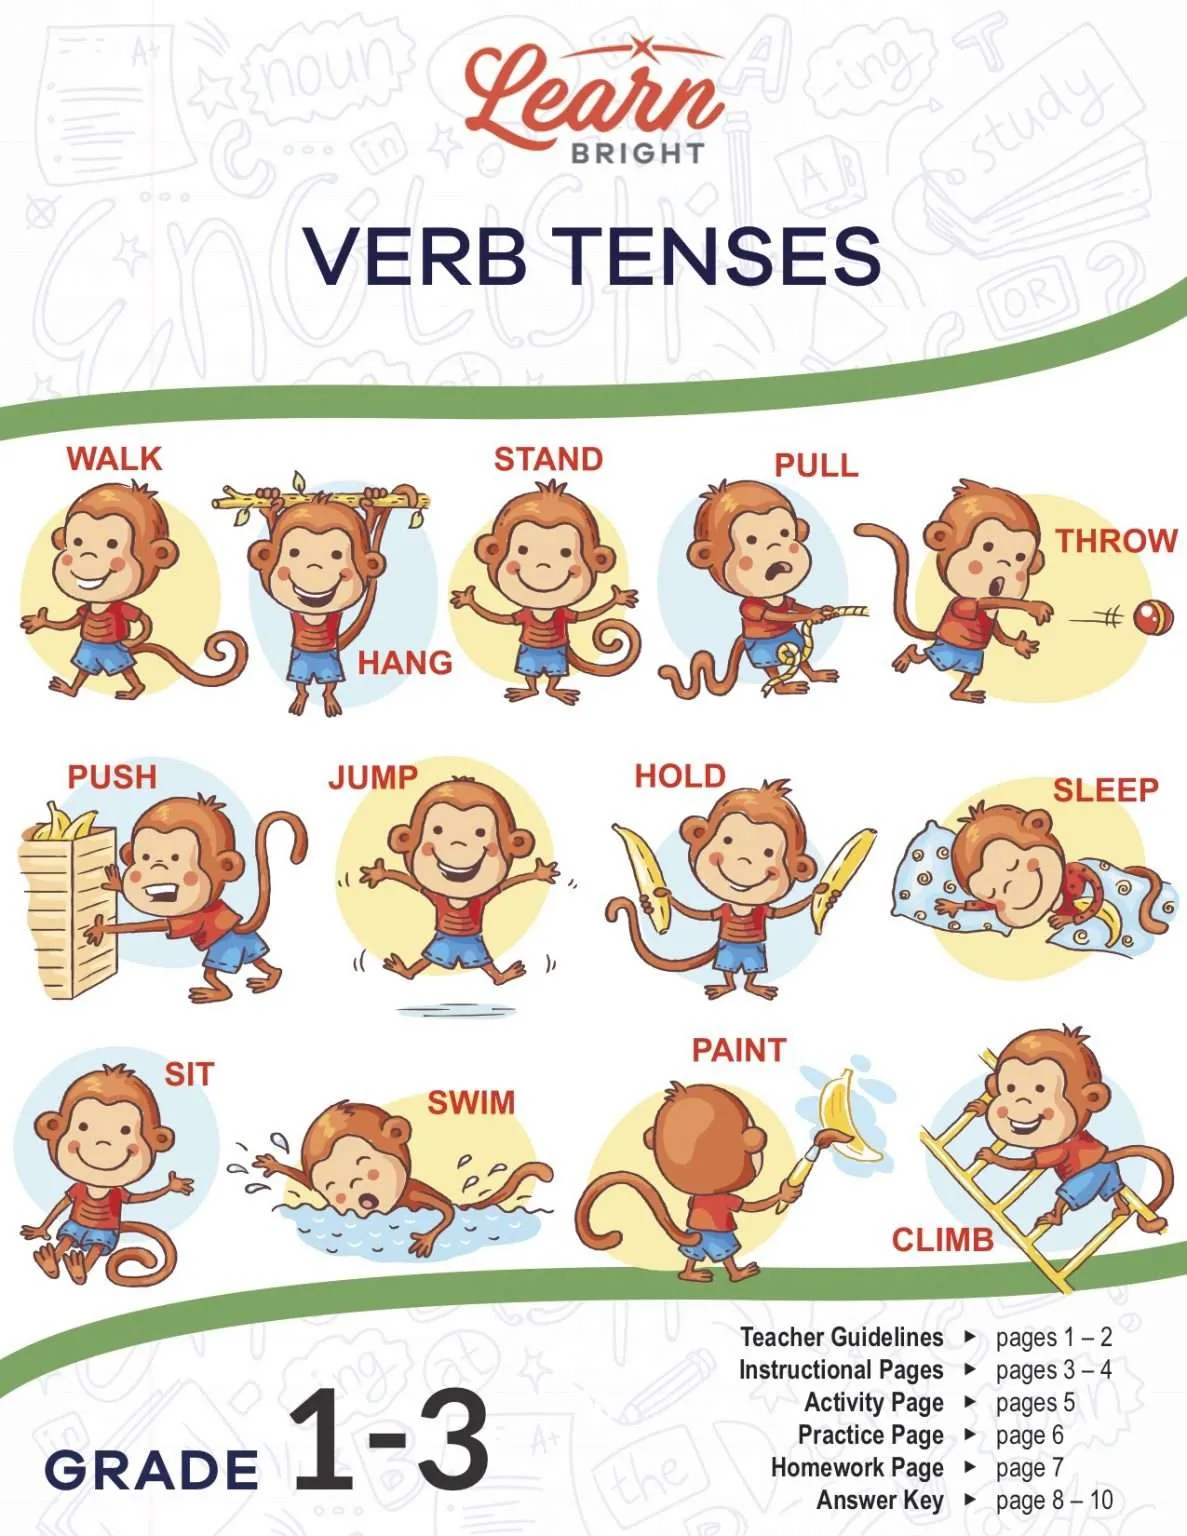 verb-tenses-worksheet-activity-ks2-teaching-resources